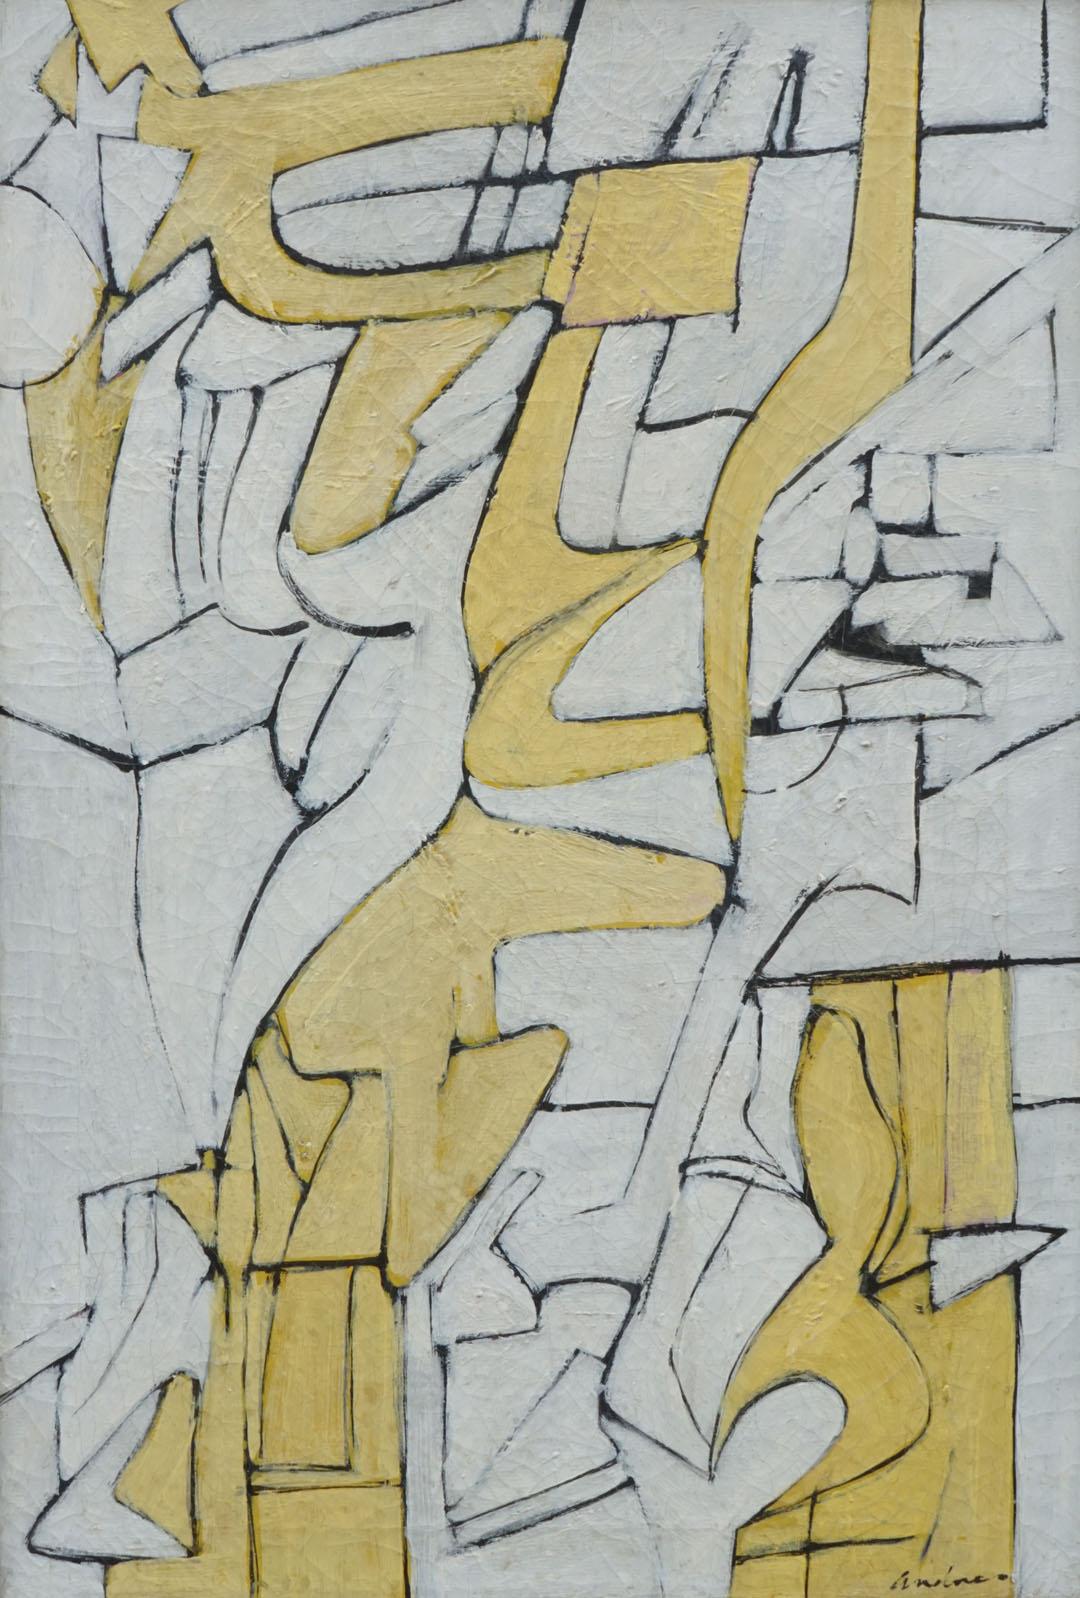 Abstrakt-expressionistisches, weißes und gelbes geometrisches Gemälde aus der Mitte des Jahrhunderts